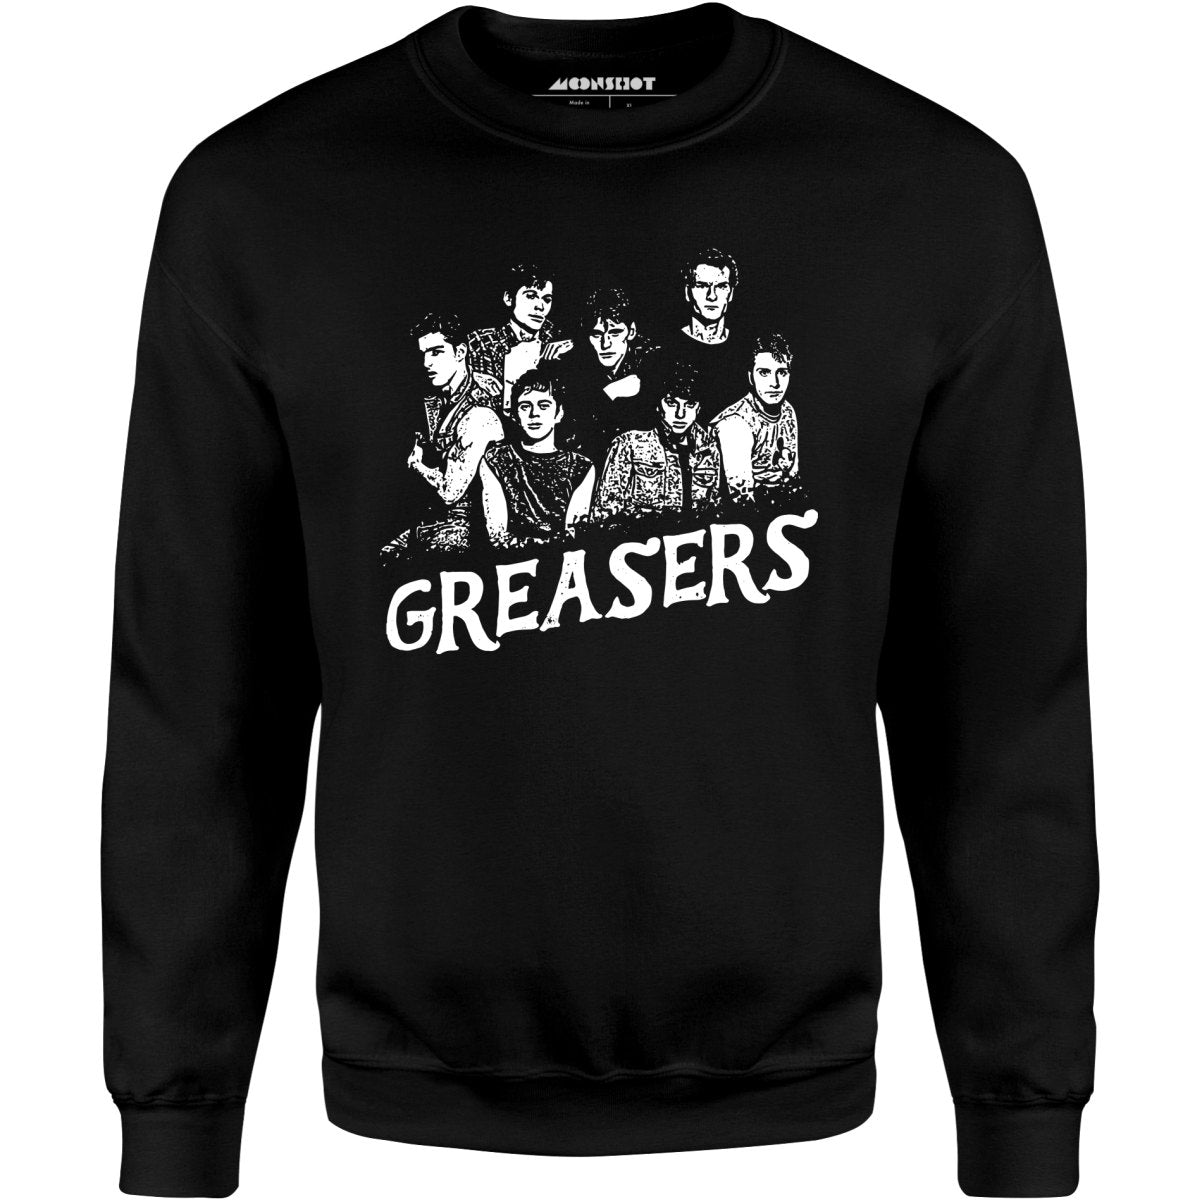 Greasers - Unisex Sweatshirt